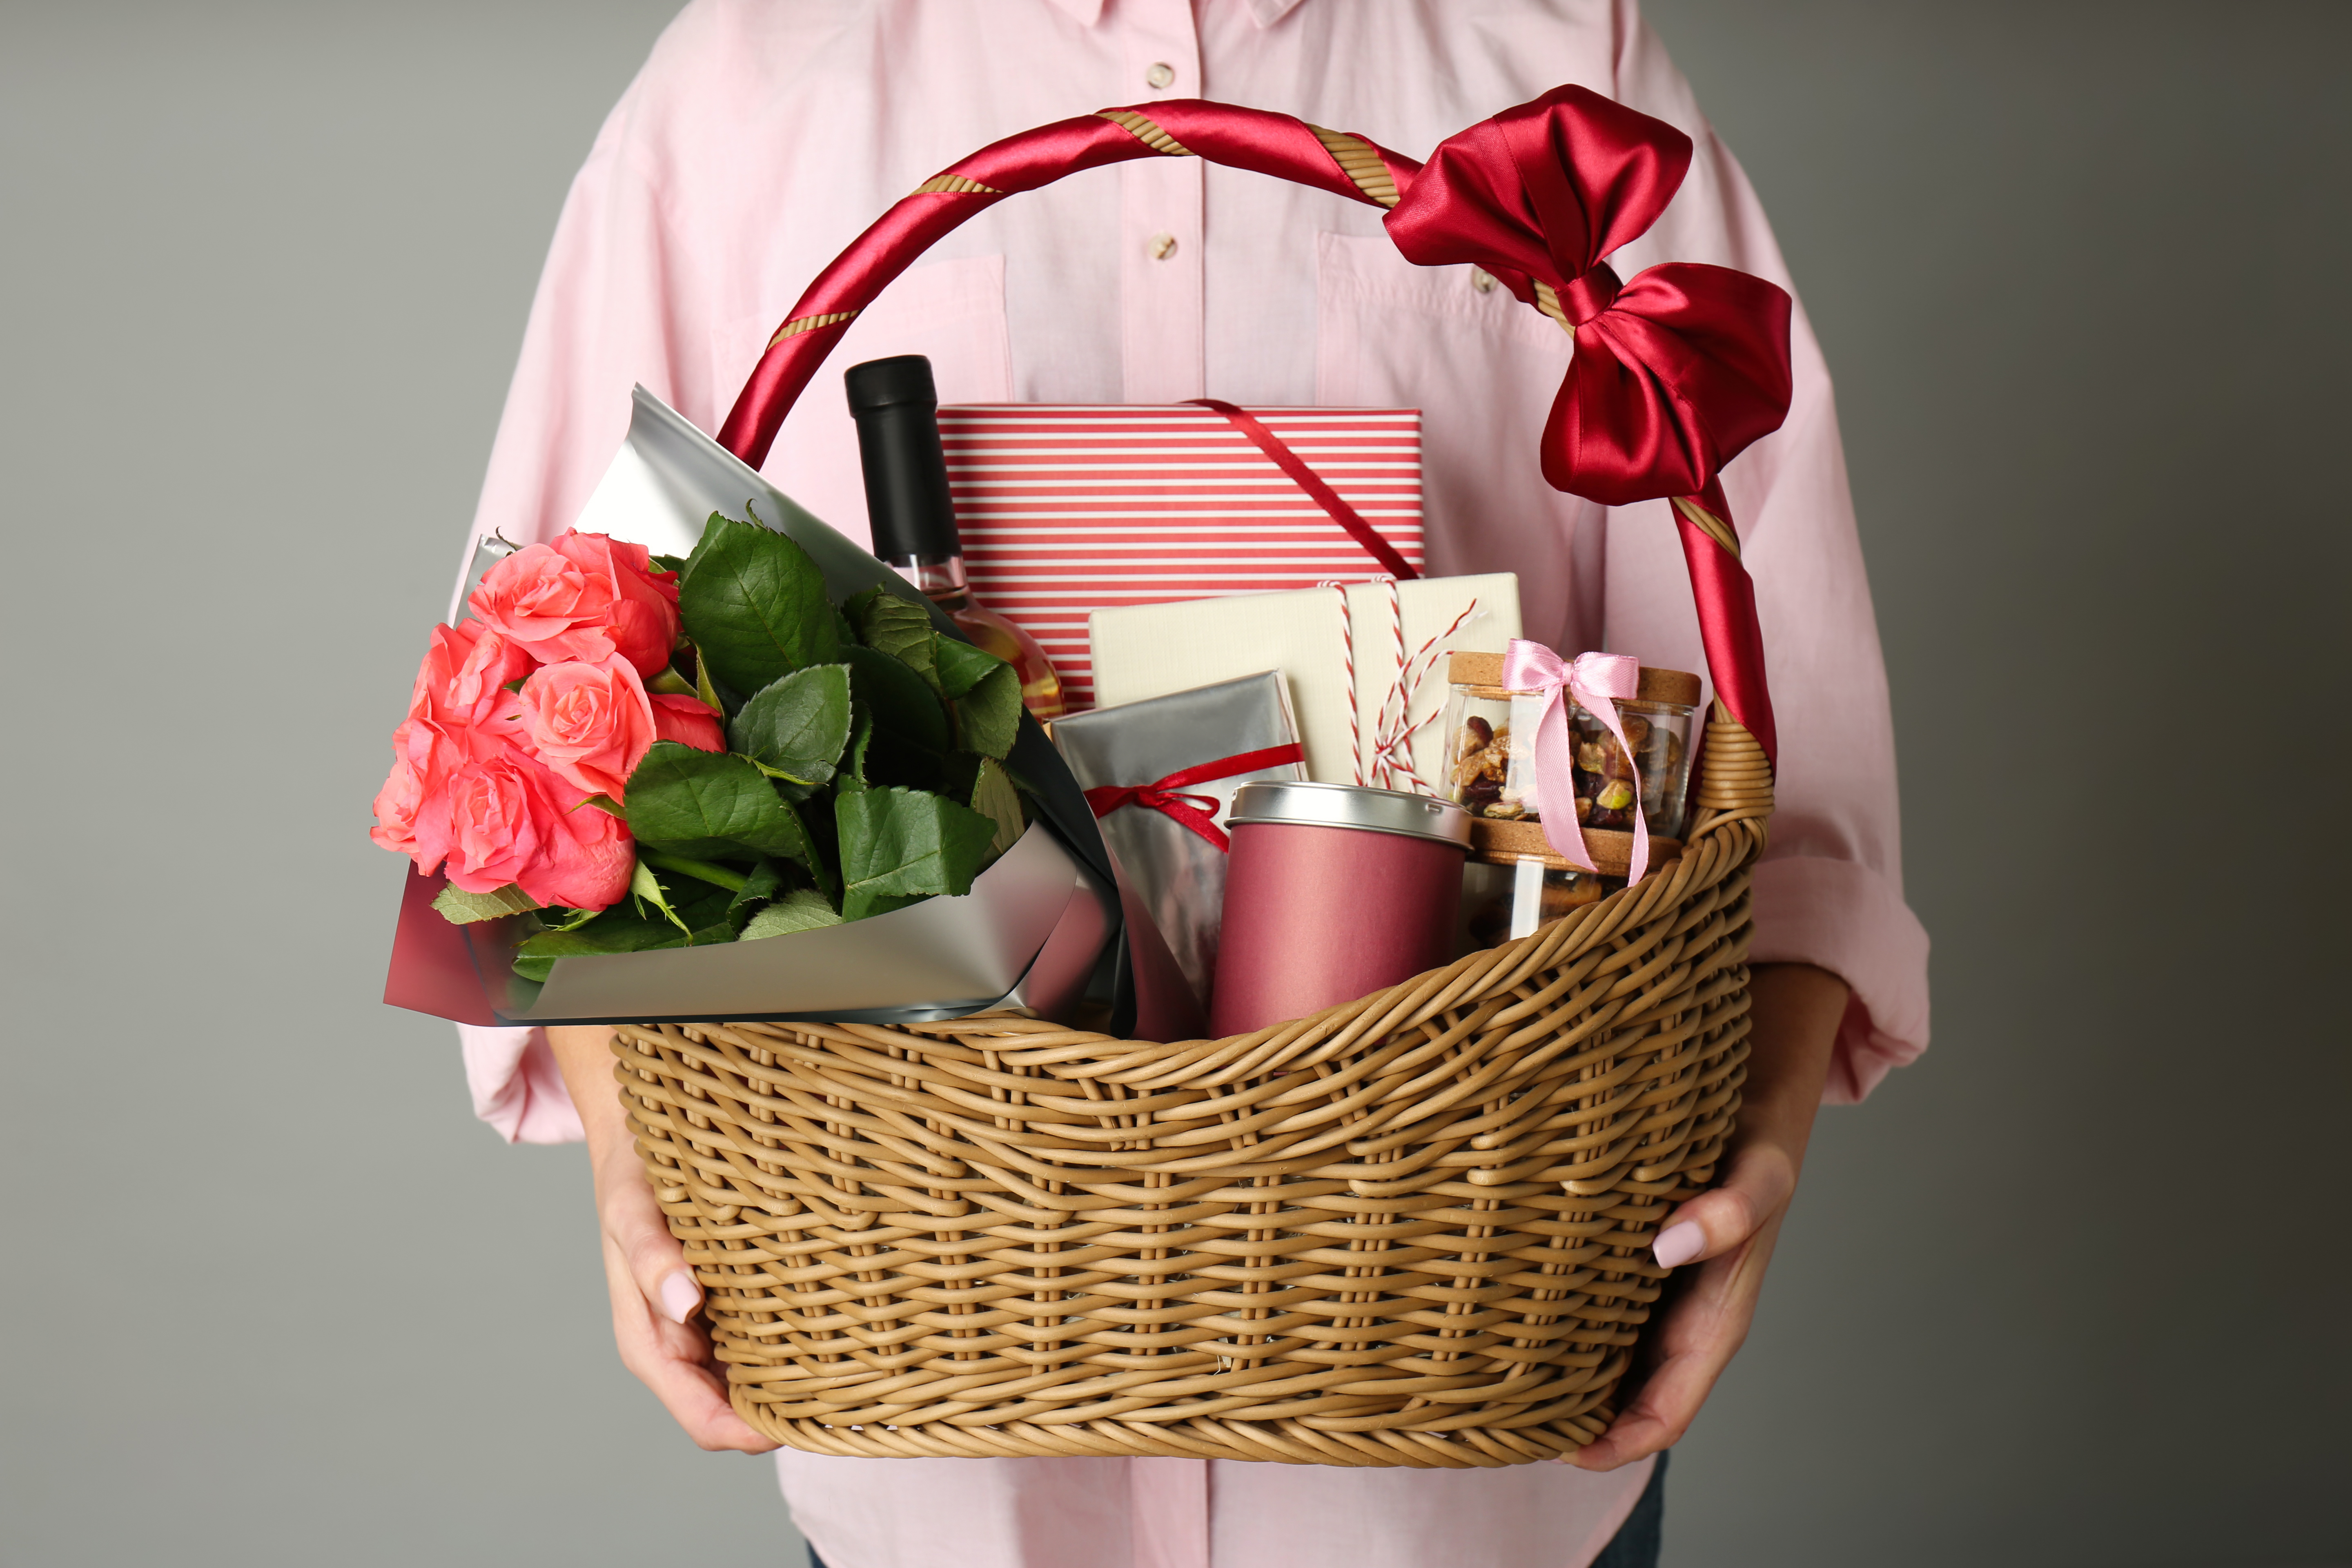 Personne tenant un panier en osier rempli de cadeaux | Source : Shutterstock